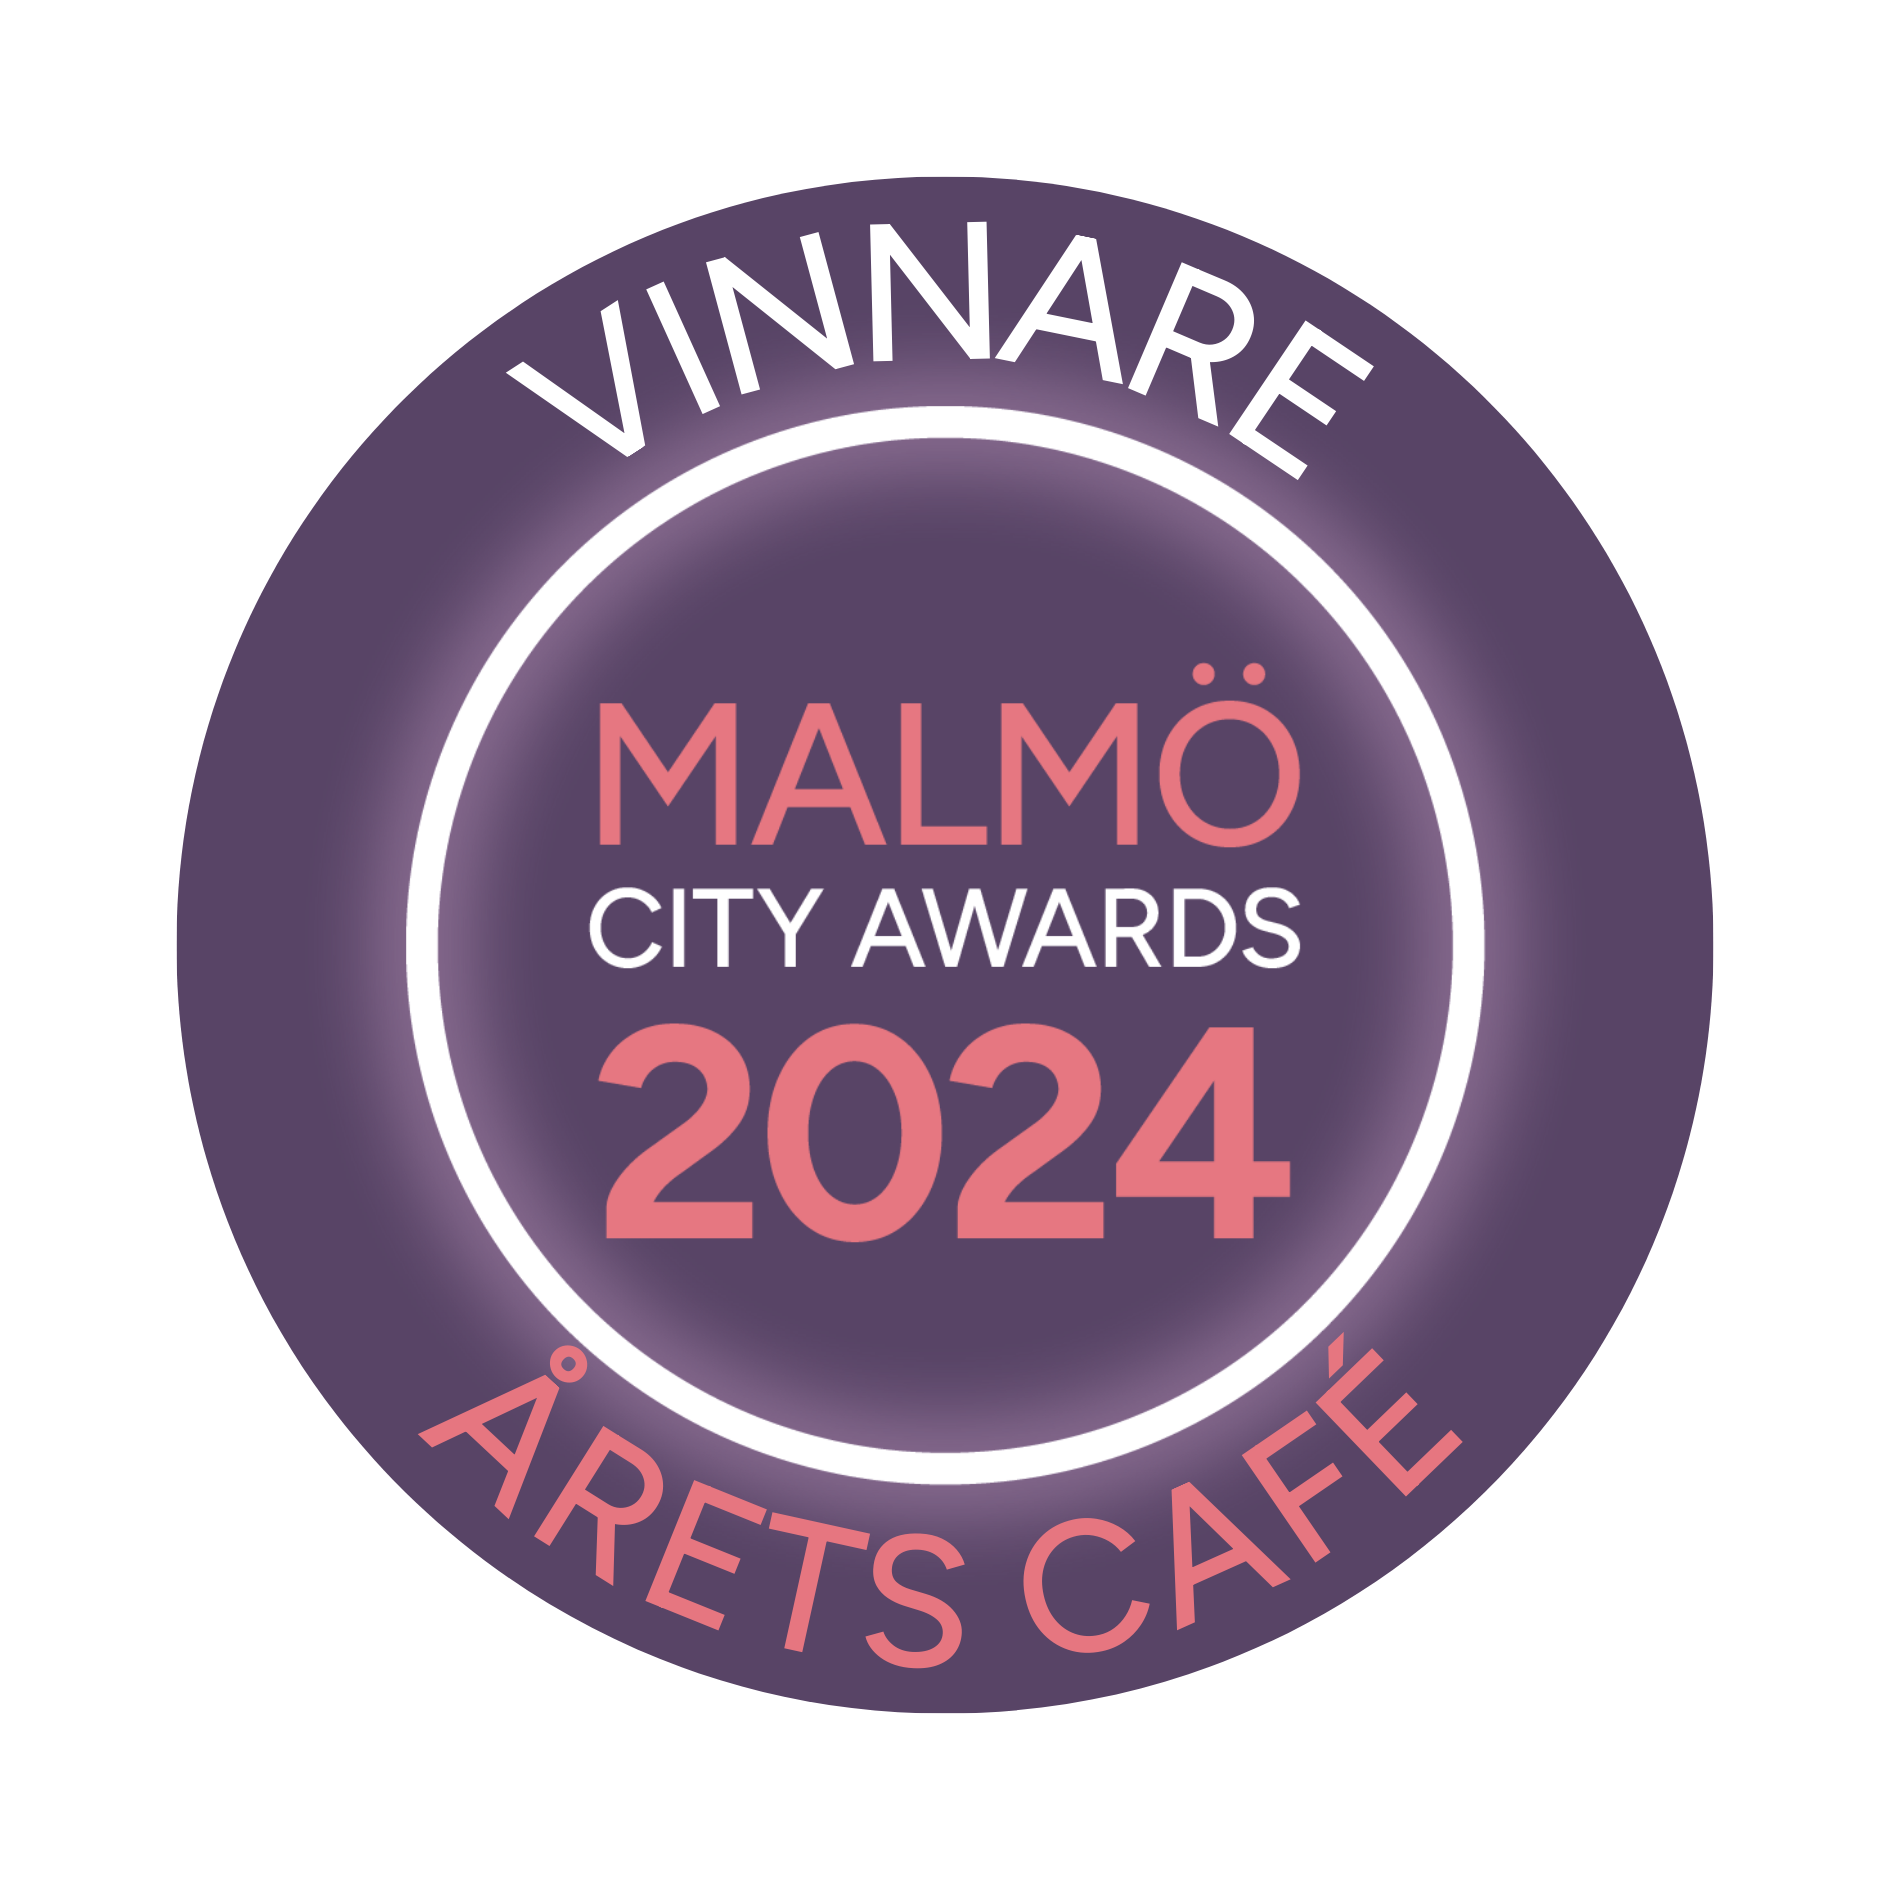 embrem Årets café Malmö City Awards 2024